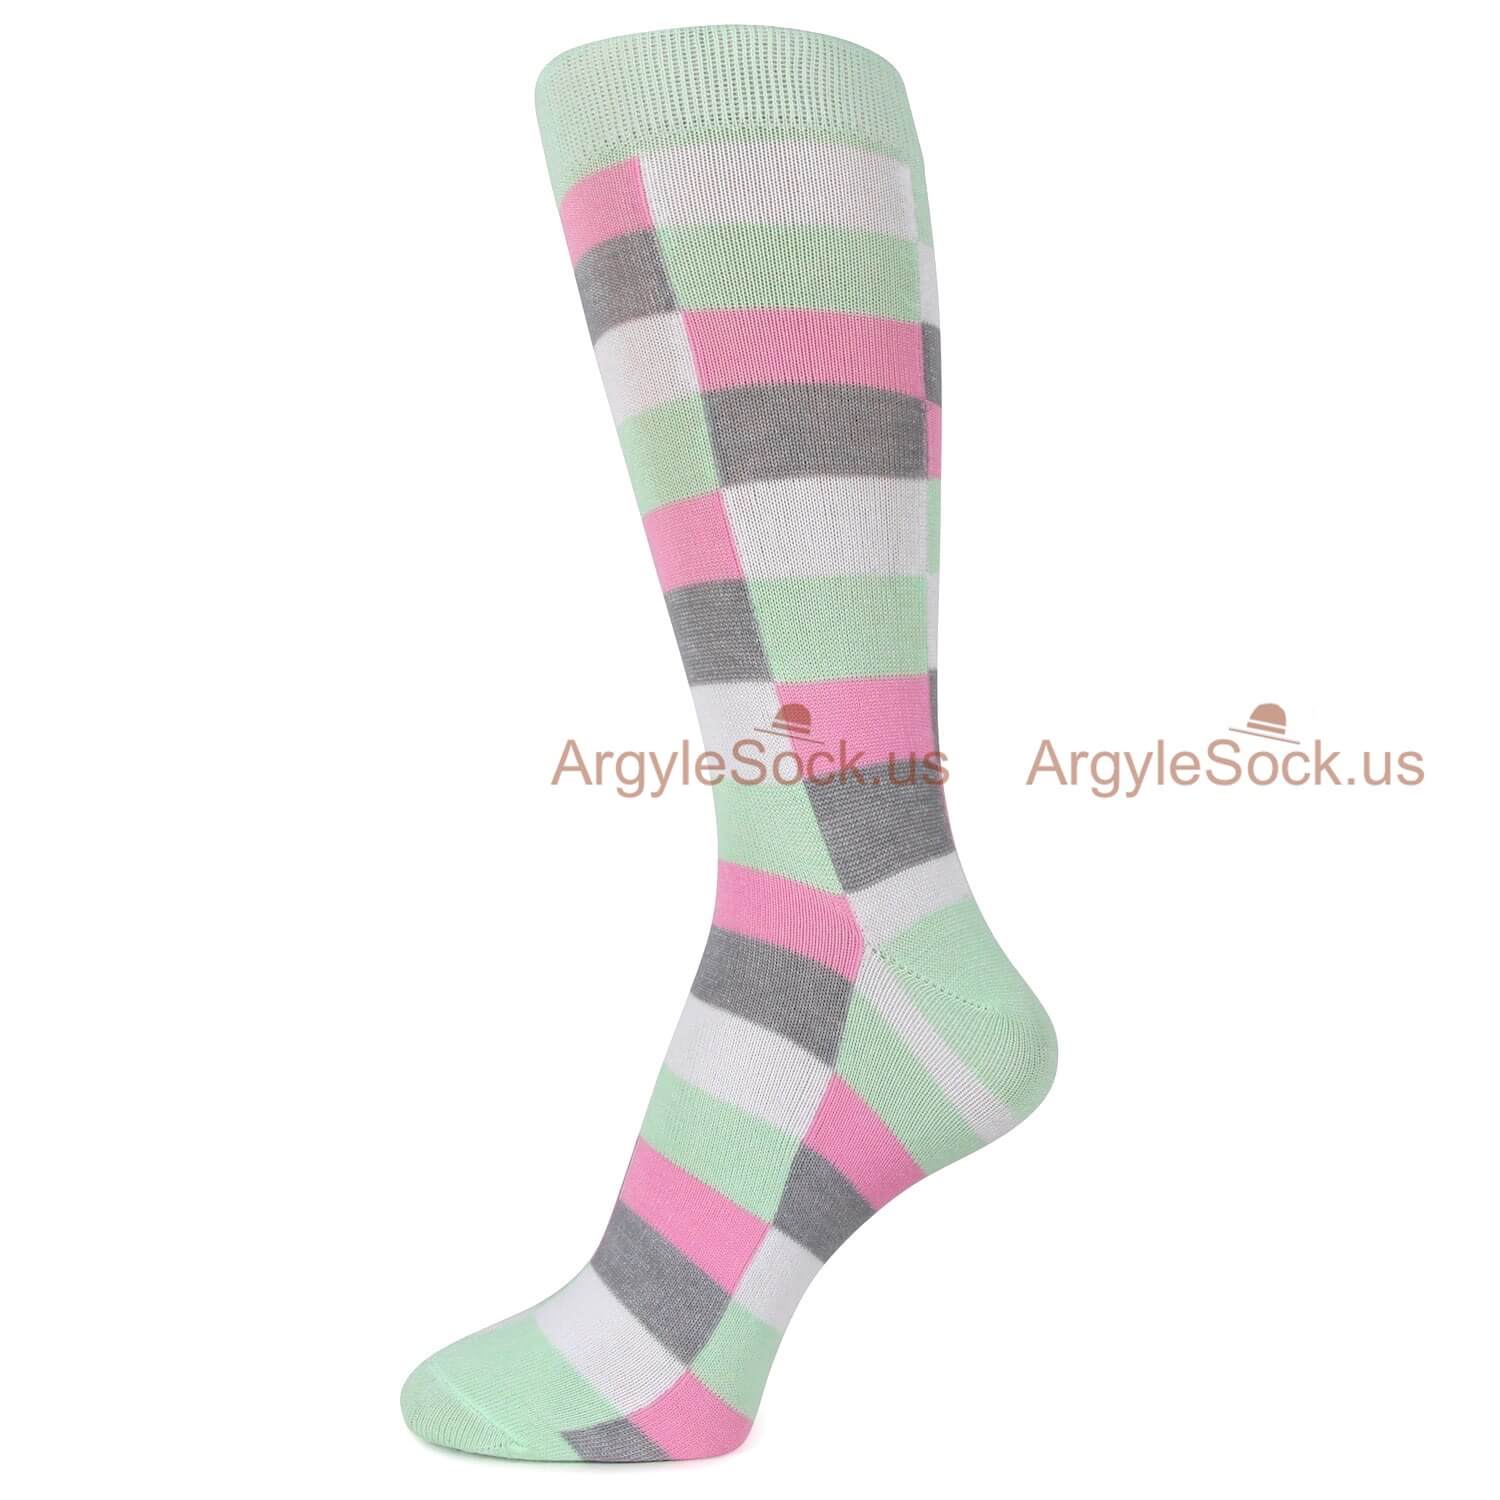 Isometric patterned socks for men